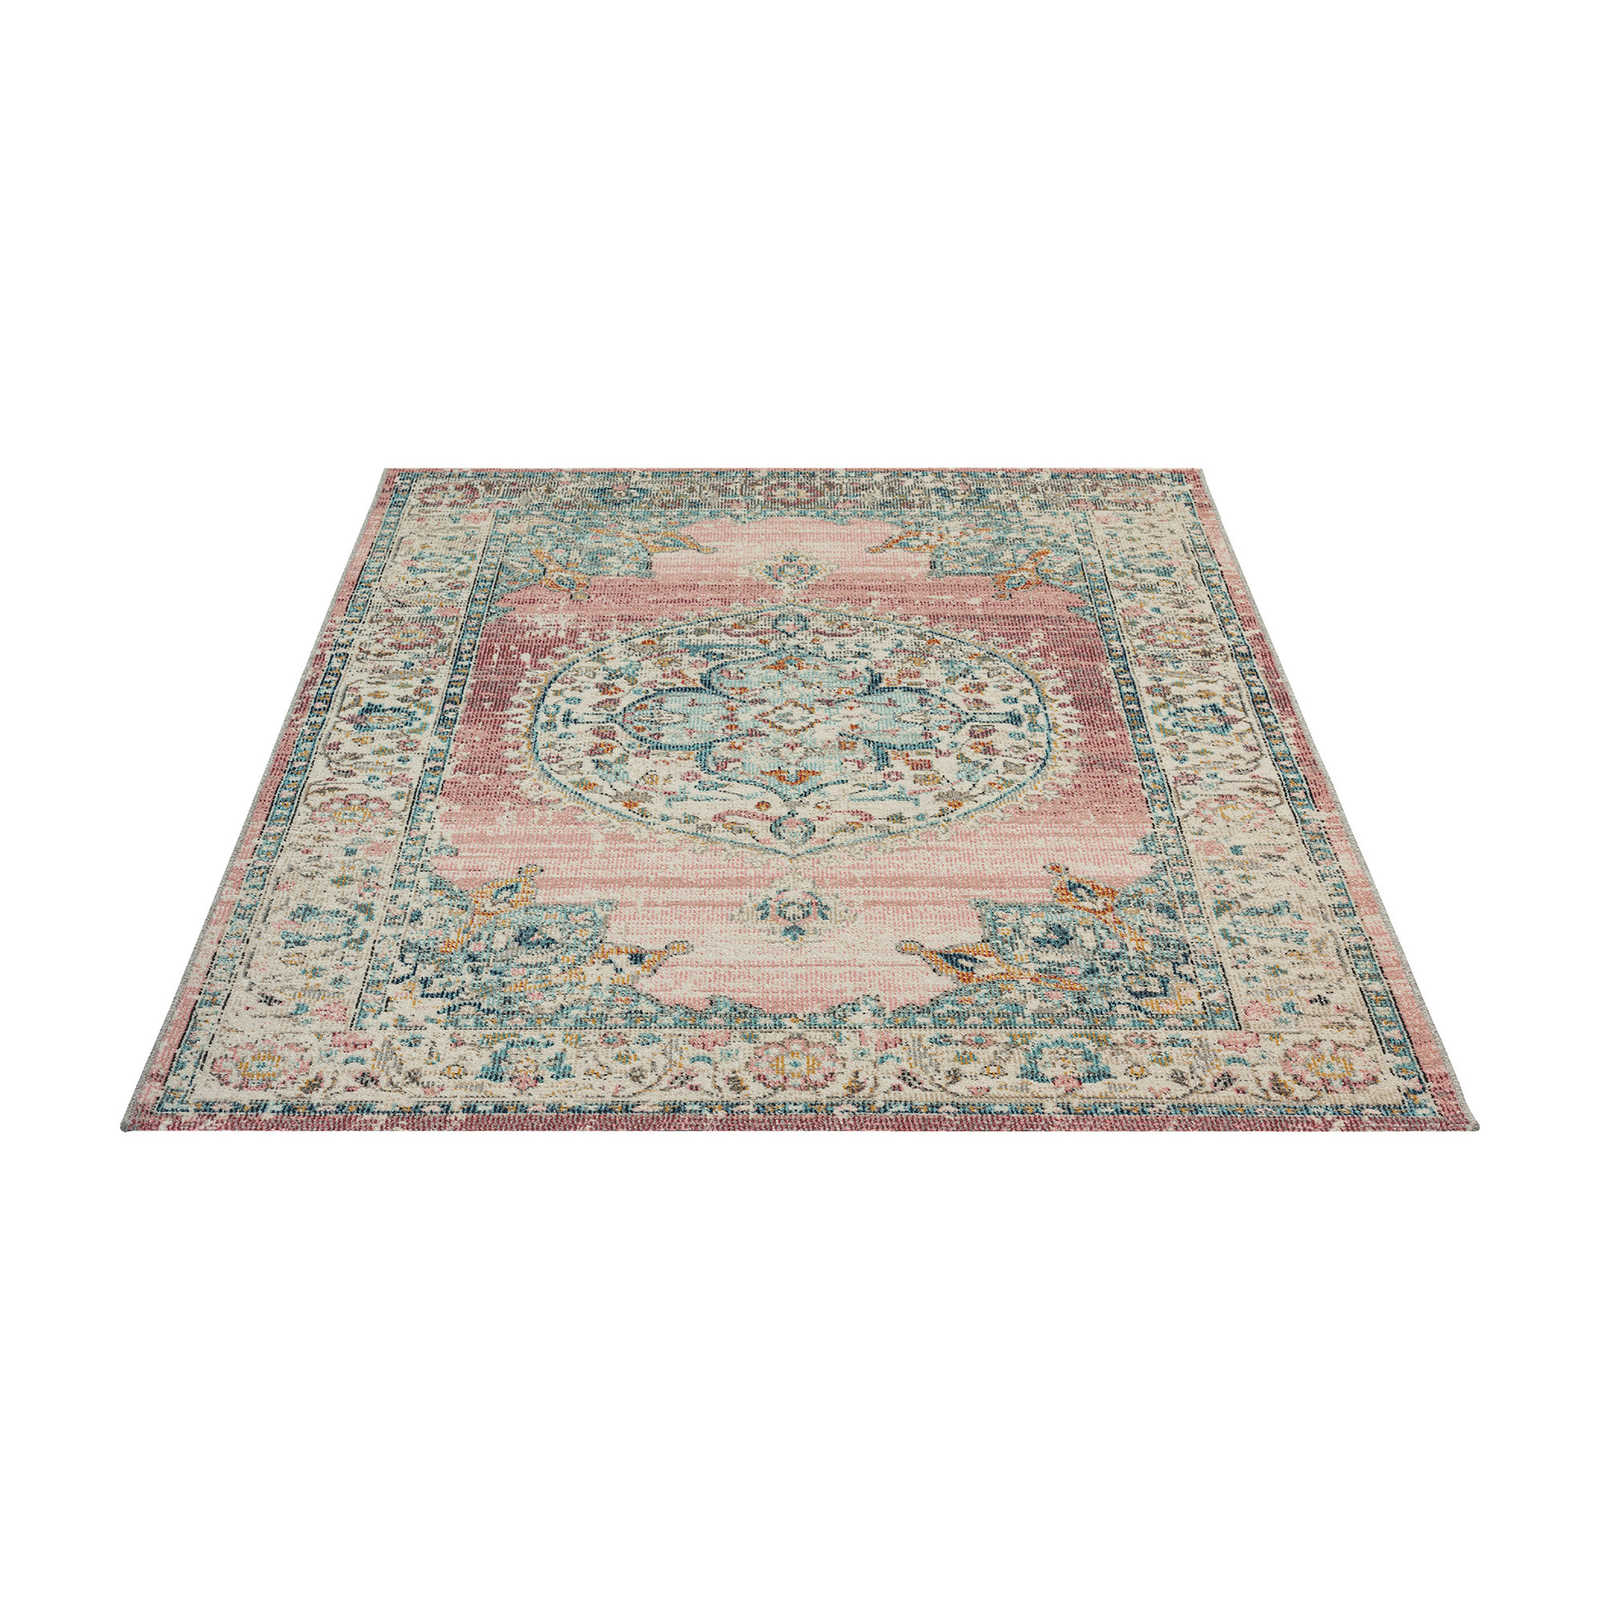 Flatweave tapijt voor buiten met roze accenten - 290 x 200 cm
